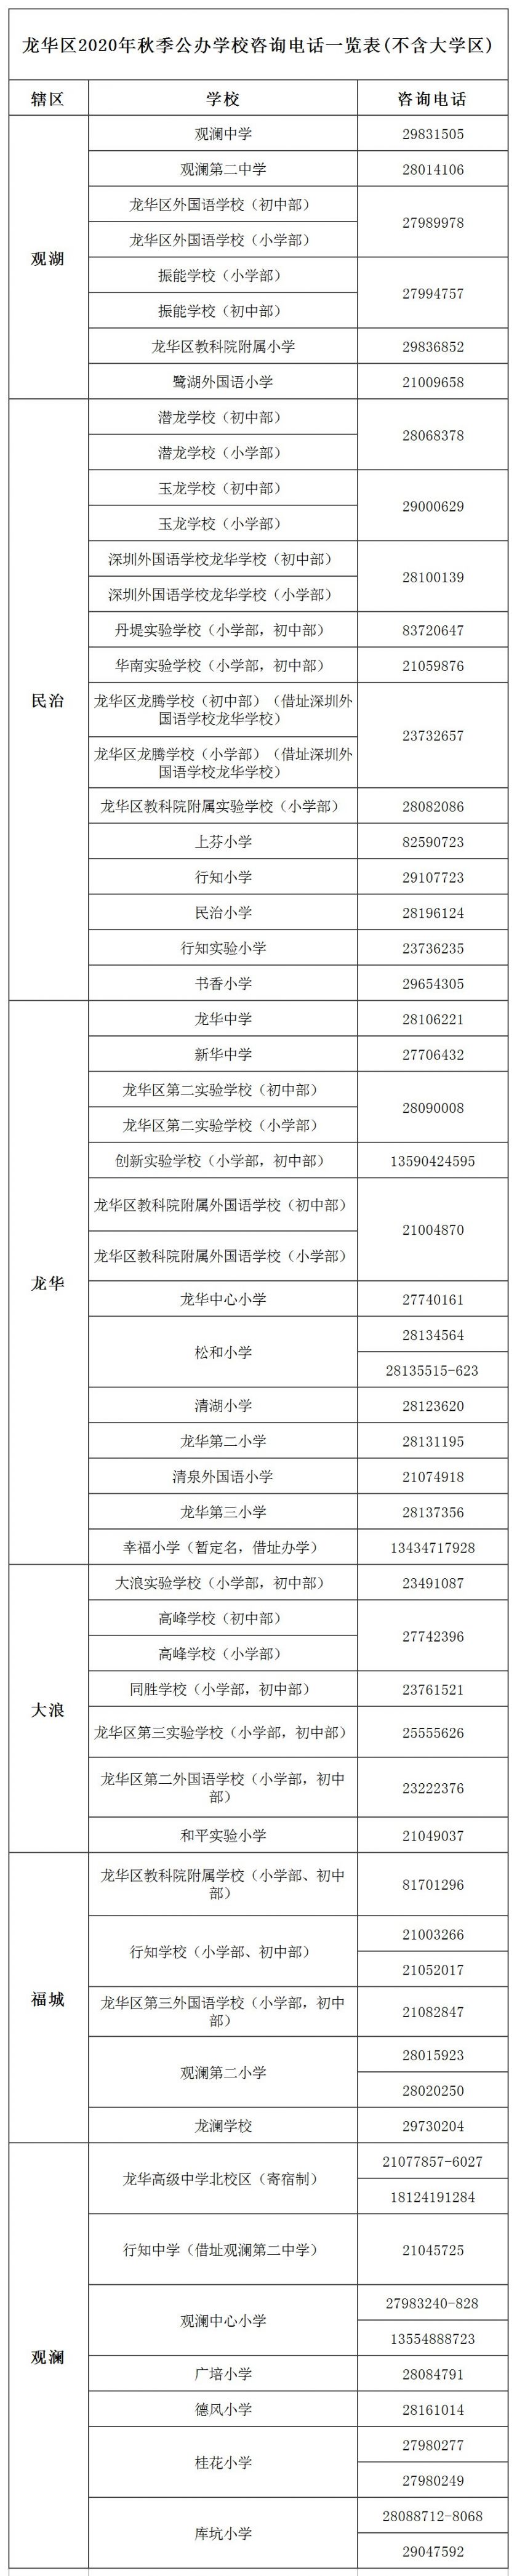 龙华区义务教育阶段公办学校咨询电话一览表